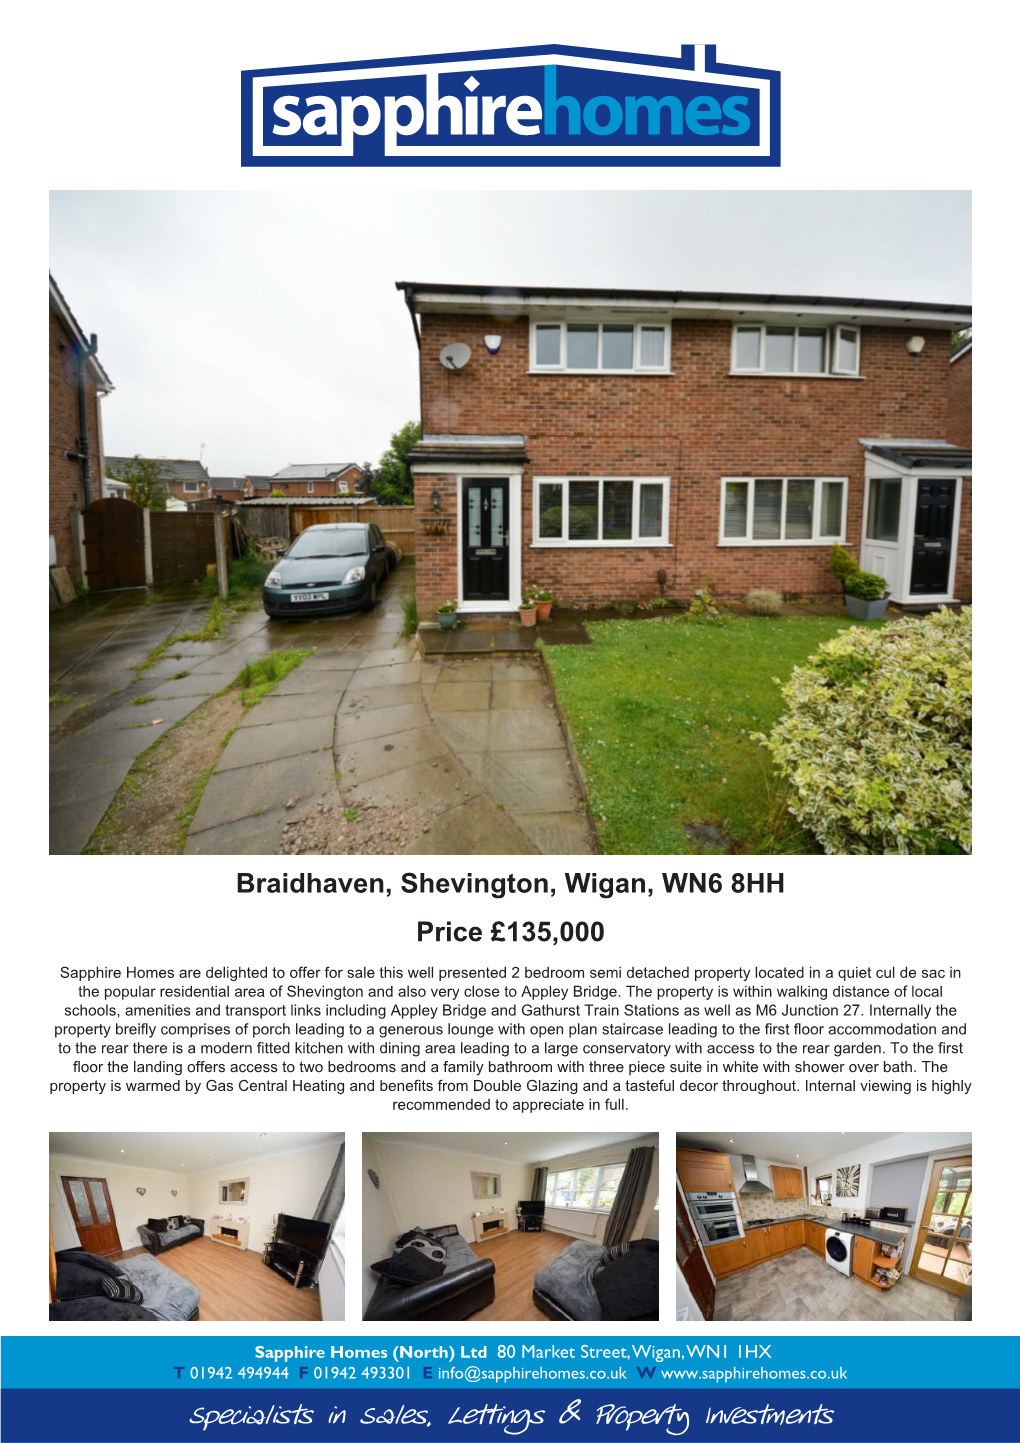 Braidhaven, Shevington, Wigan, WN6 8HH Price £135,000